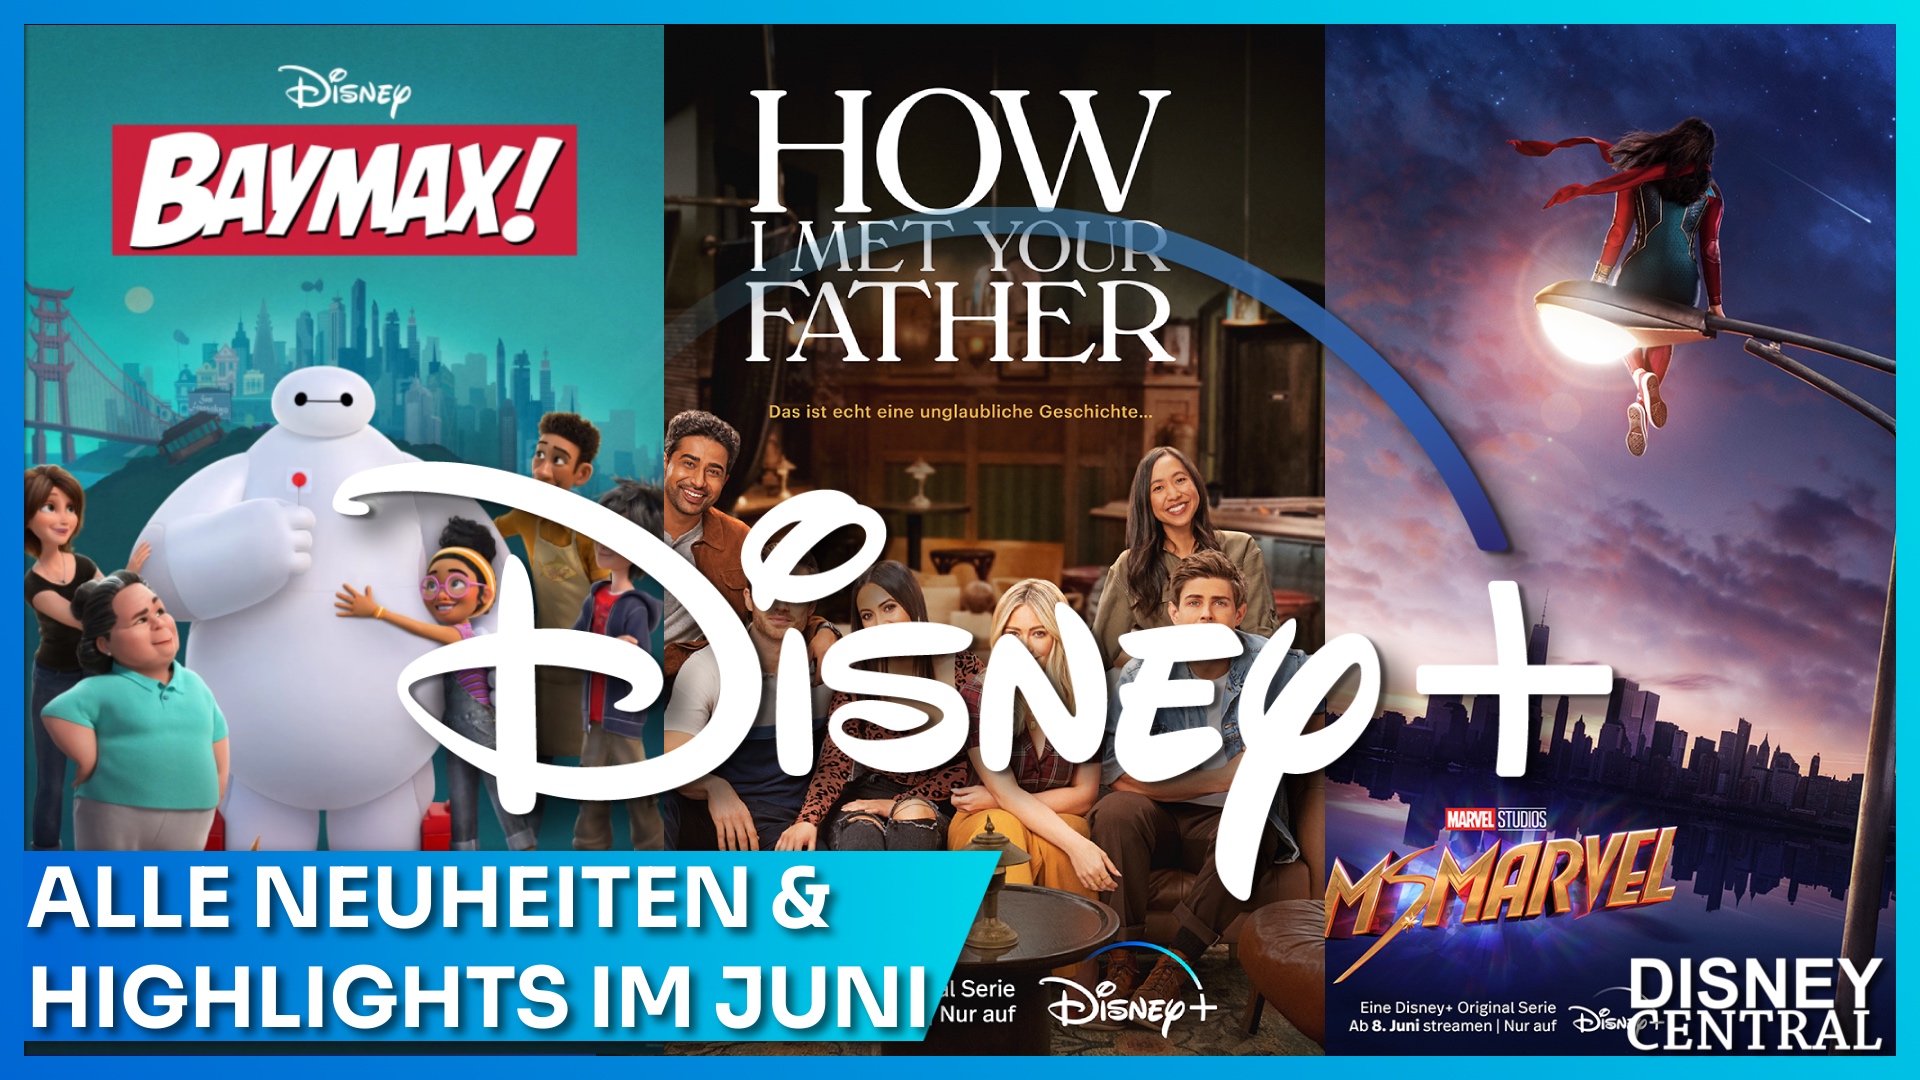 Streaming Highlights und Neuheiten auf Disney+ im Juni 2022